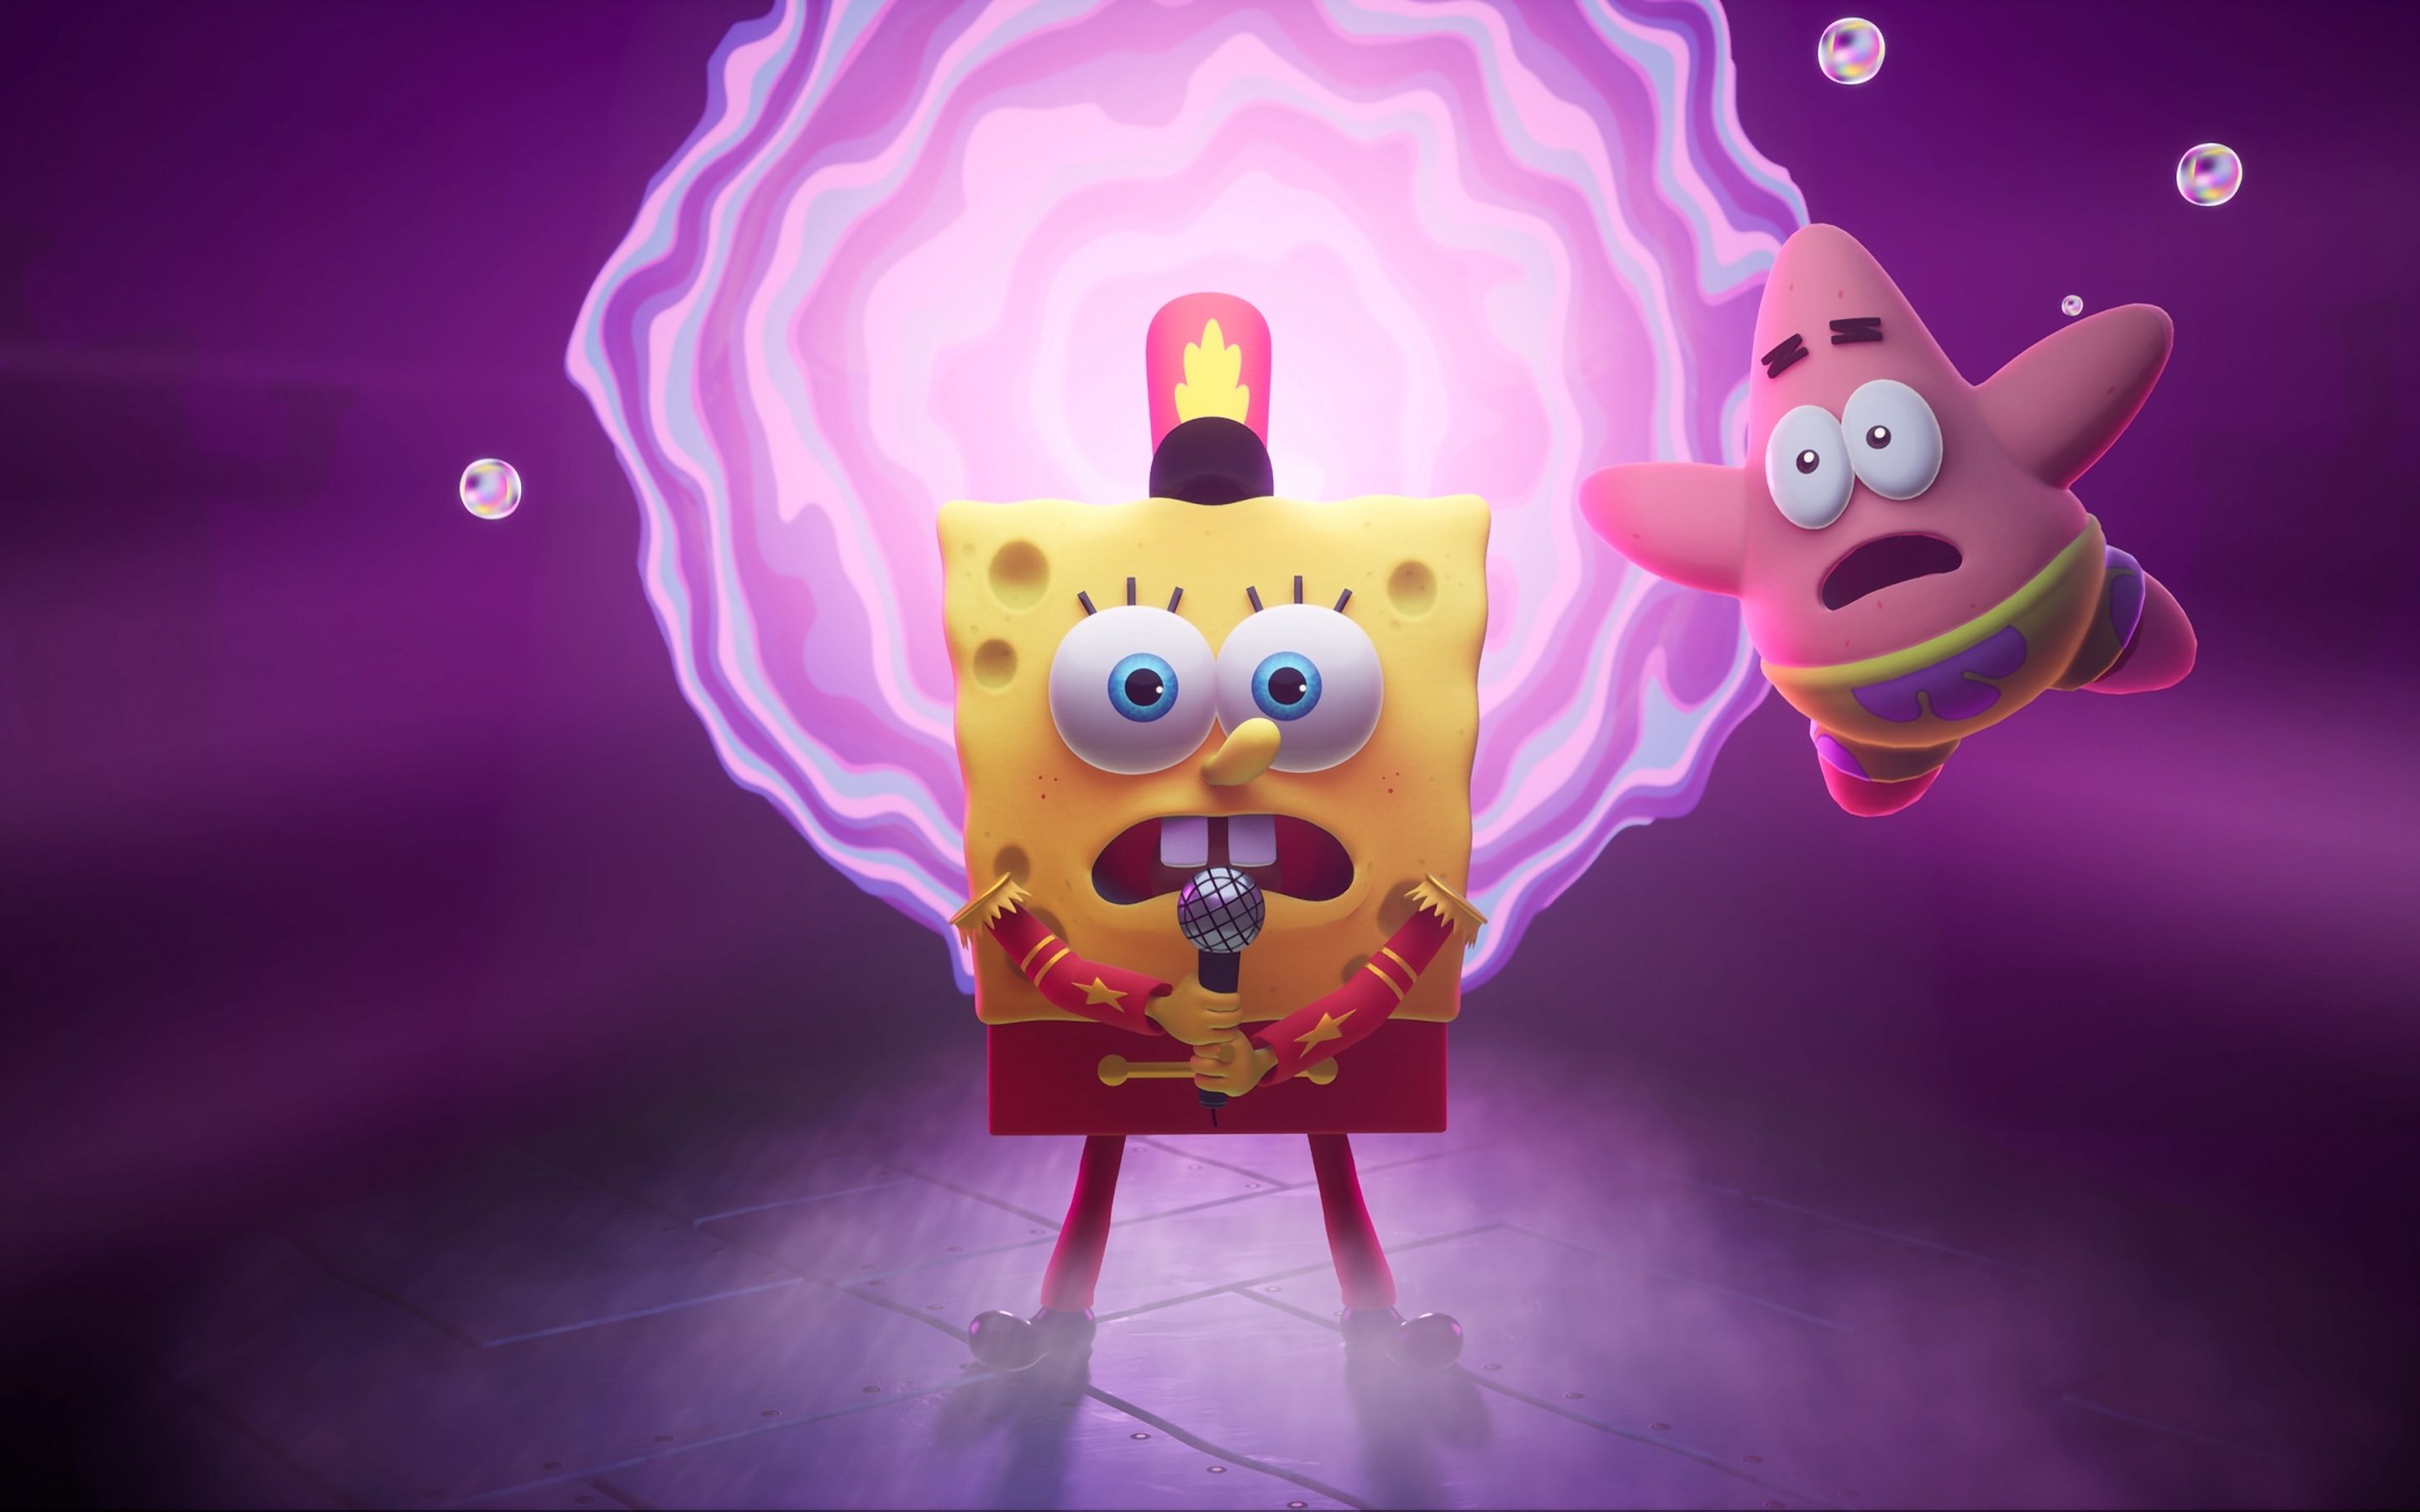 Patrick Star Images Patrick And Spongebob Wallpaper  Spongebob Png   400x300 PNG Download  PNGkit